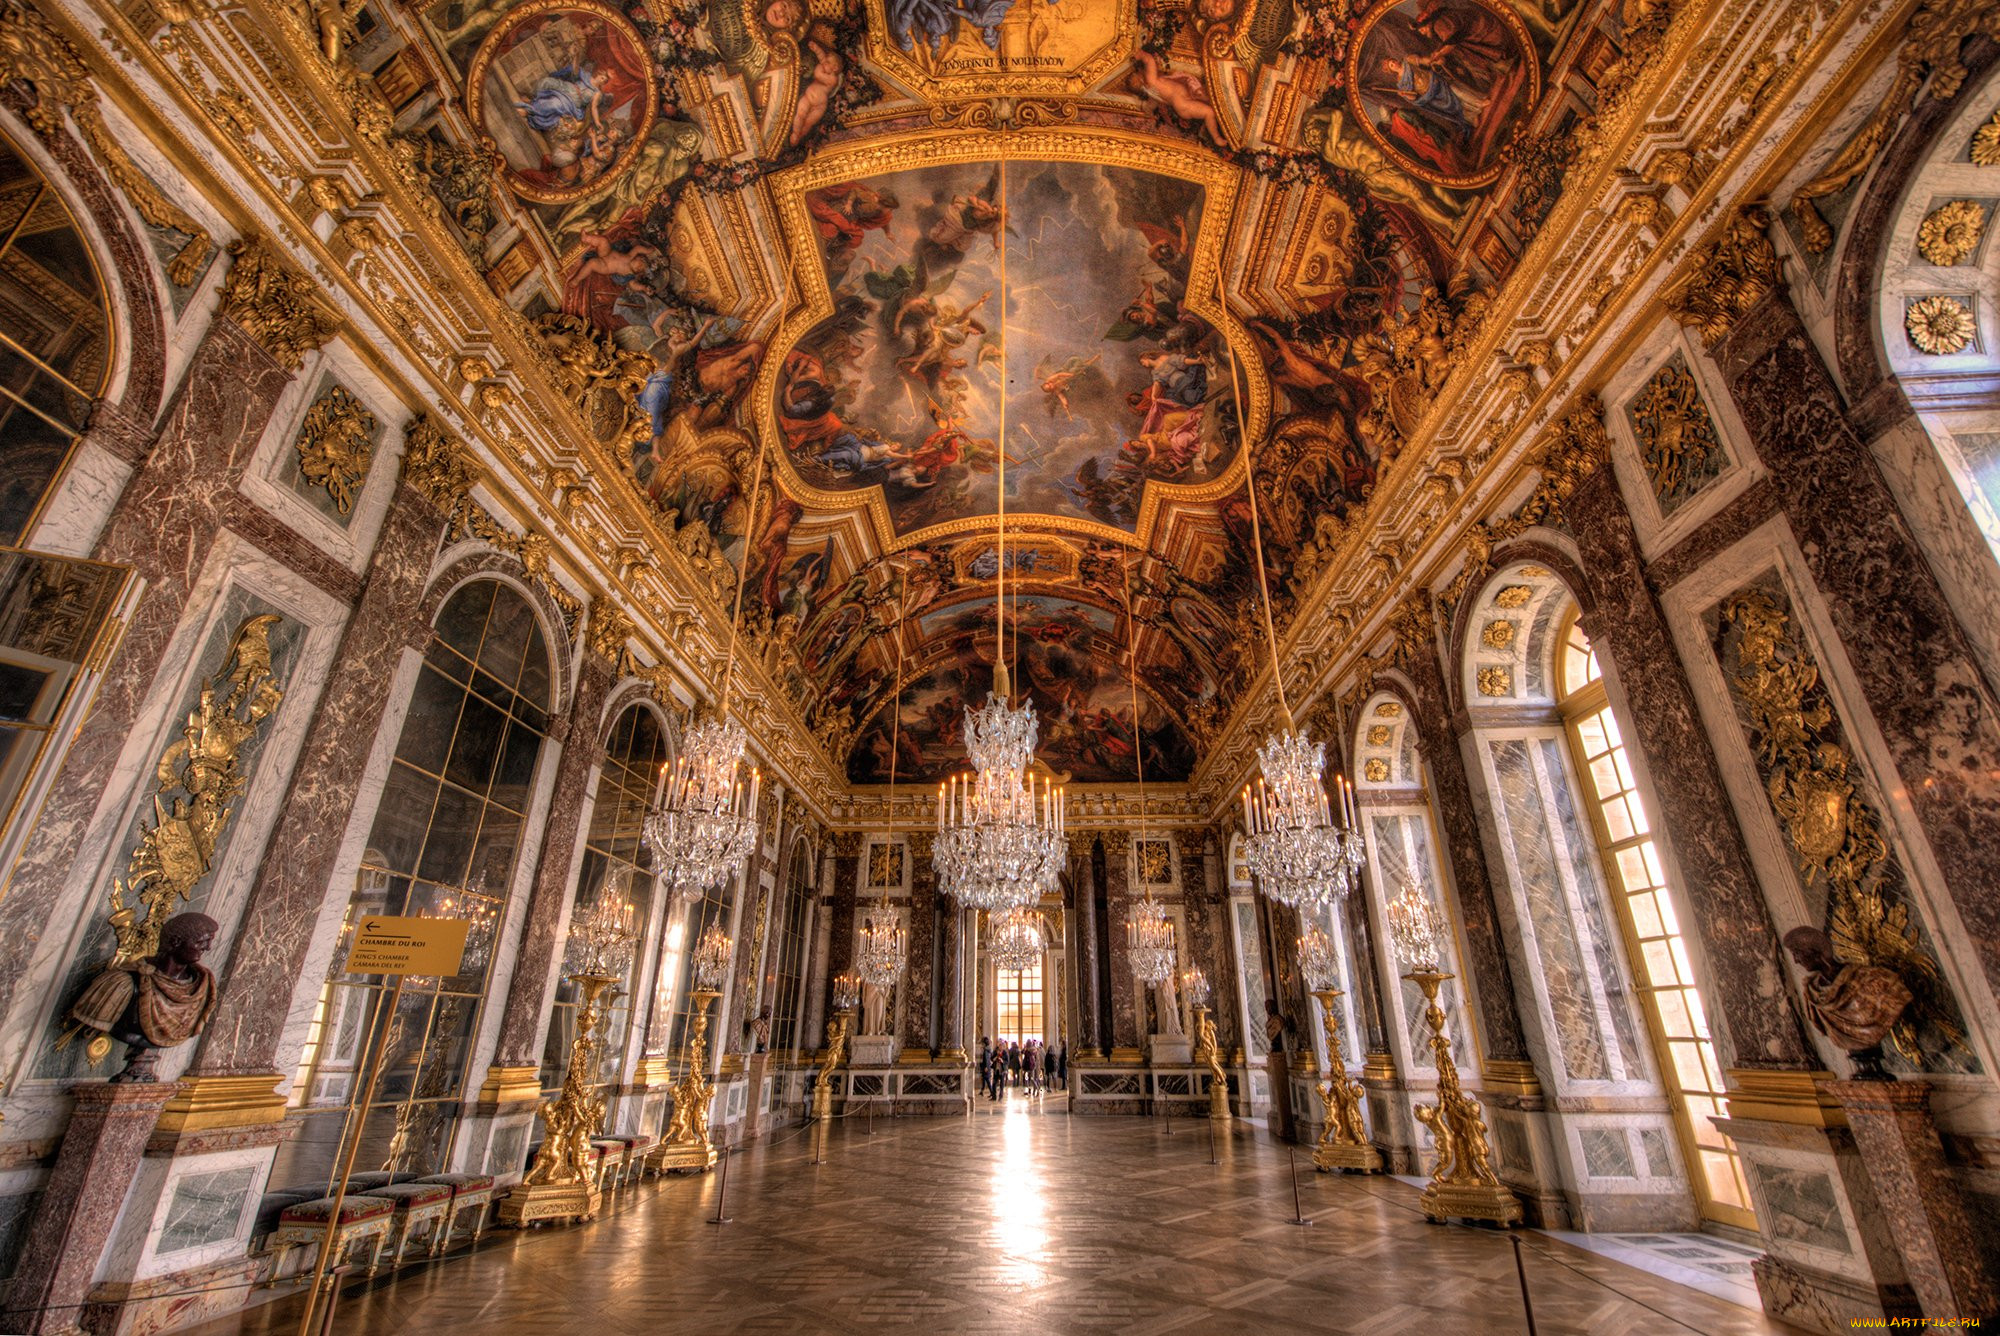 Chateau versailles. Франция Барокко Версальский дворец. Версальский дворец, Версаль дворец Версаля. Зеркальная галерея Версальского дворца. Барокко интерьеры Версальского дворца.